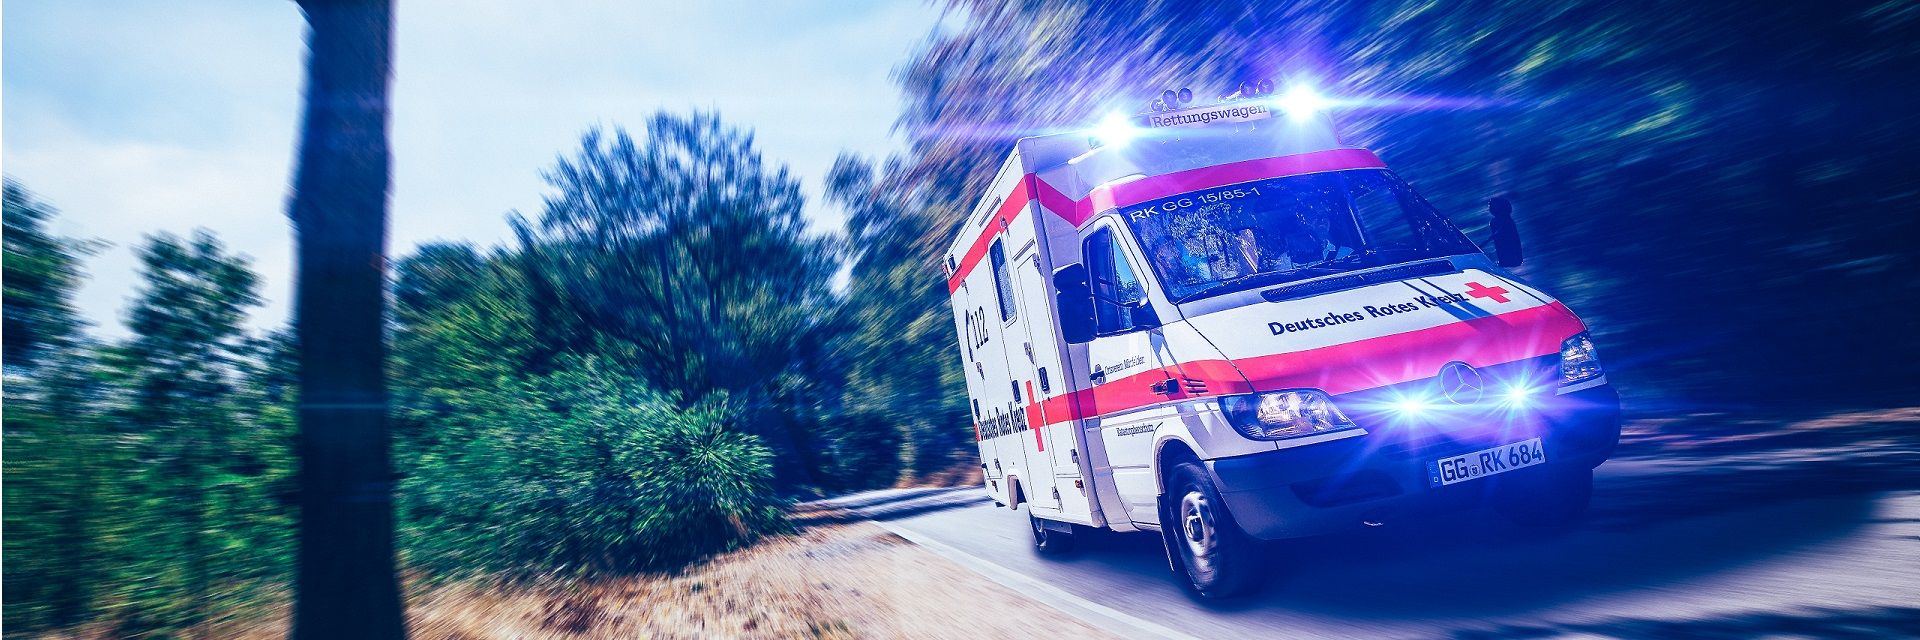 Bild: Ein Rettungswagen fährt mit Blaulicht in Mörfelden